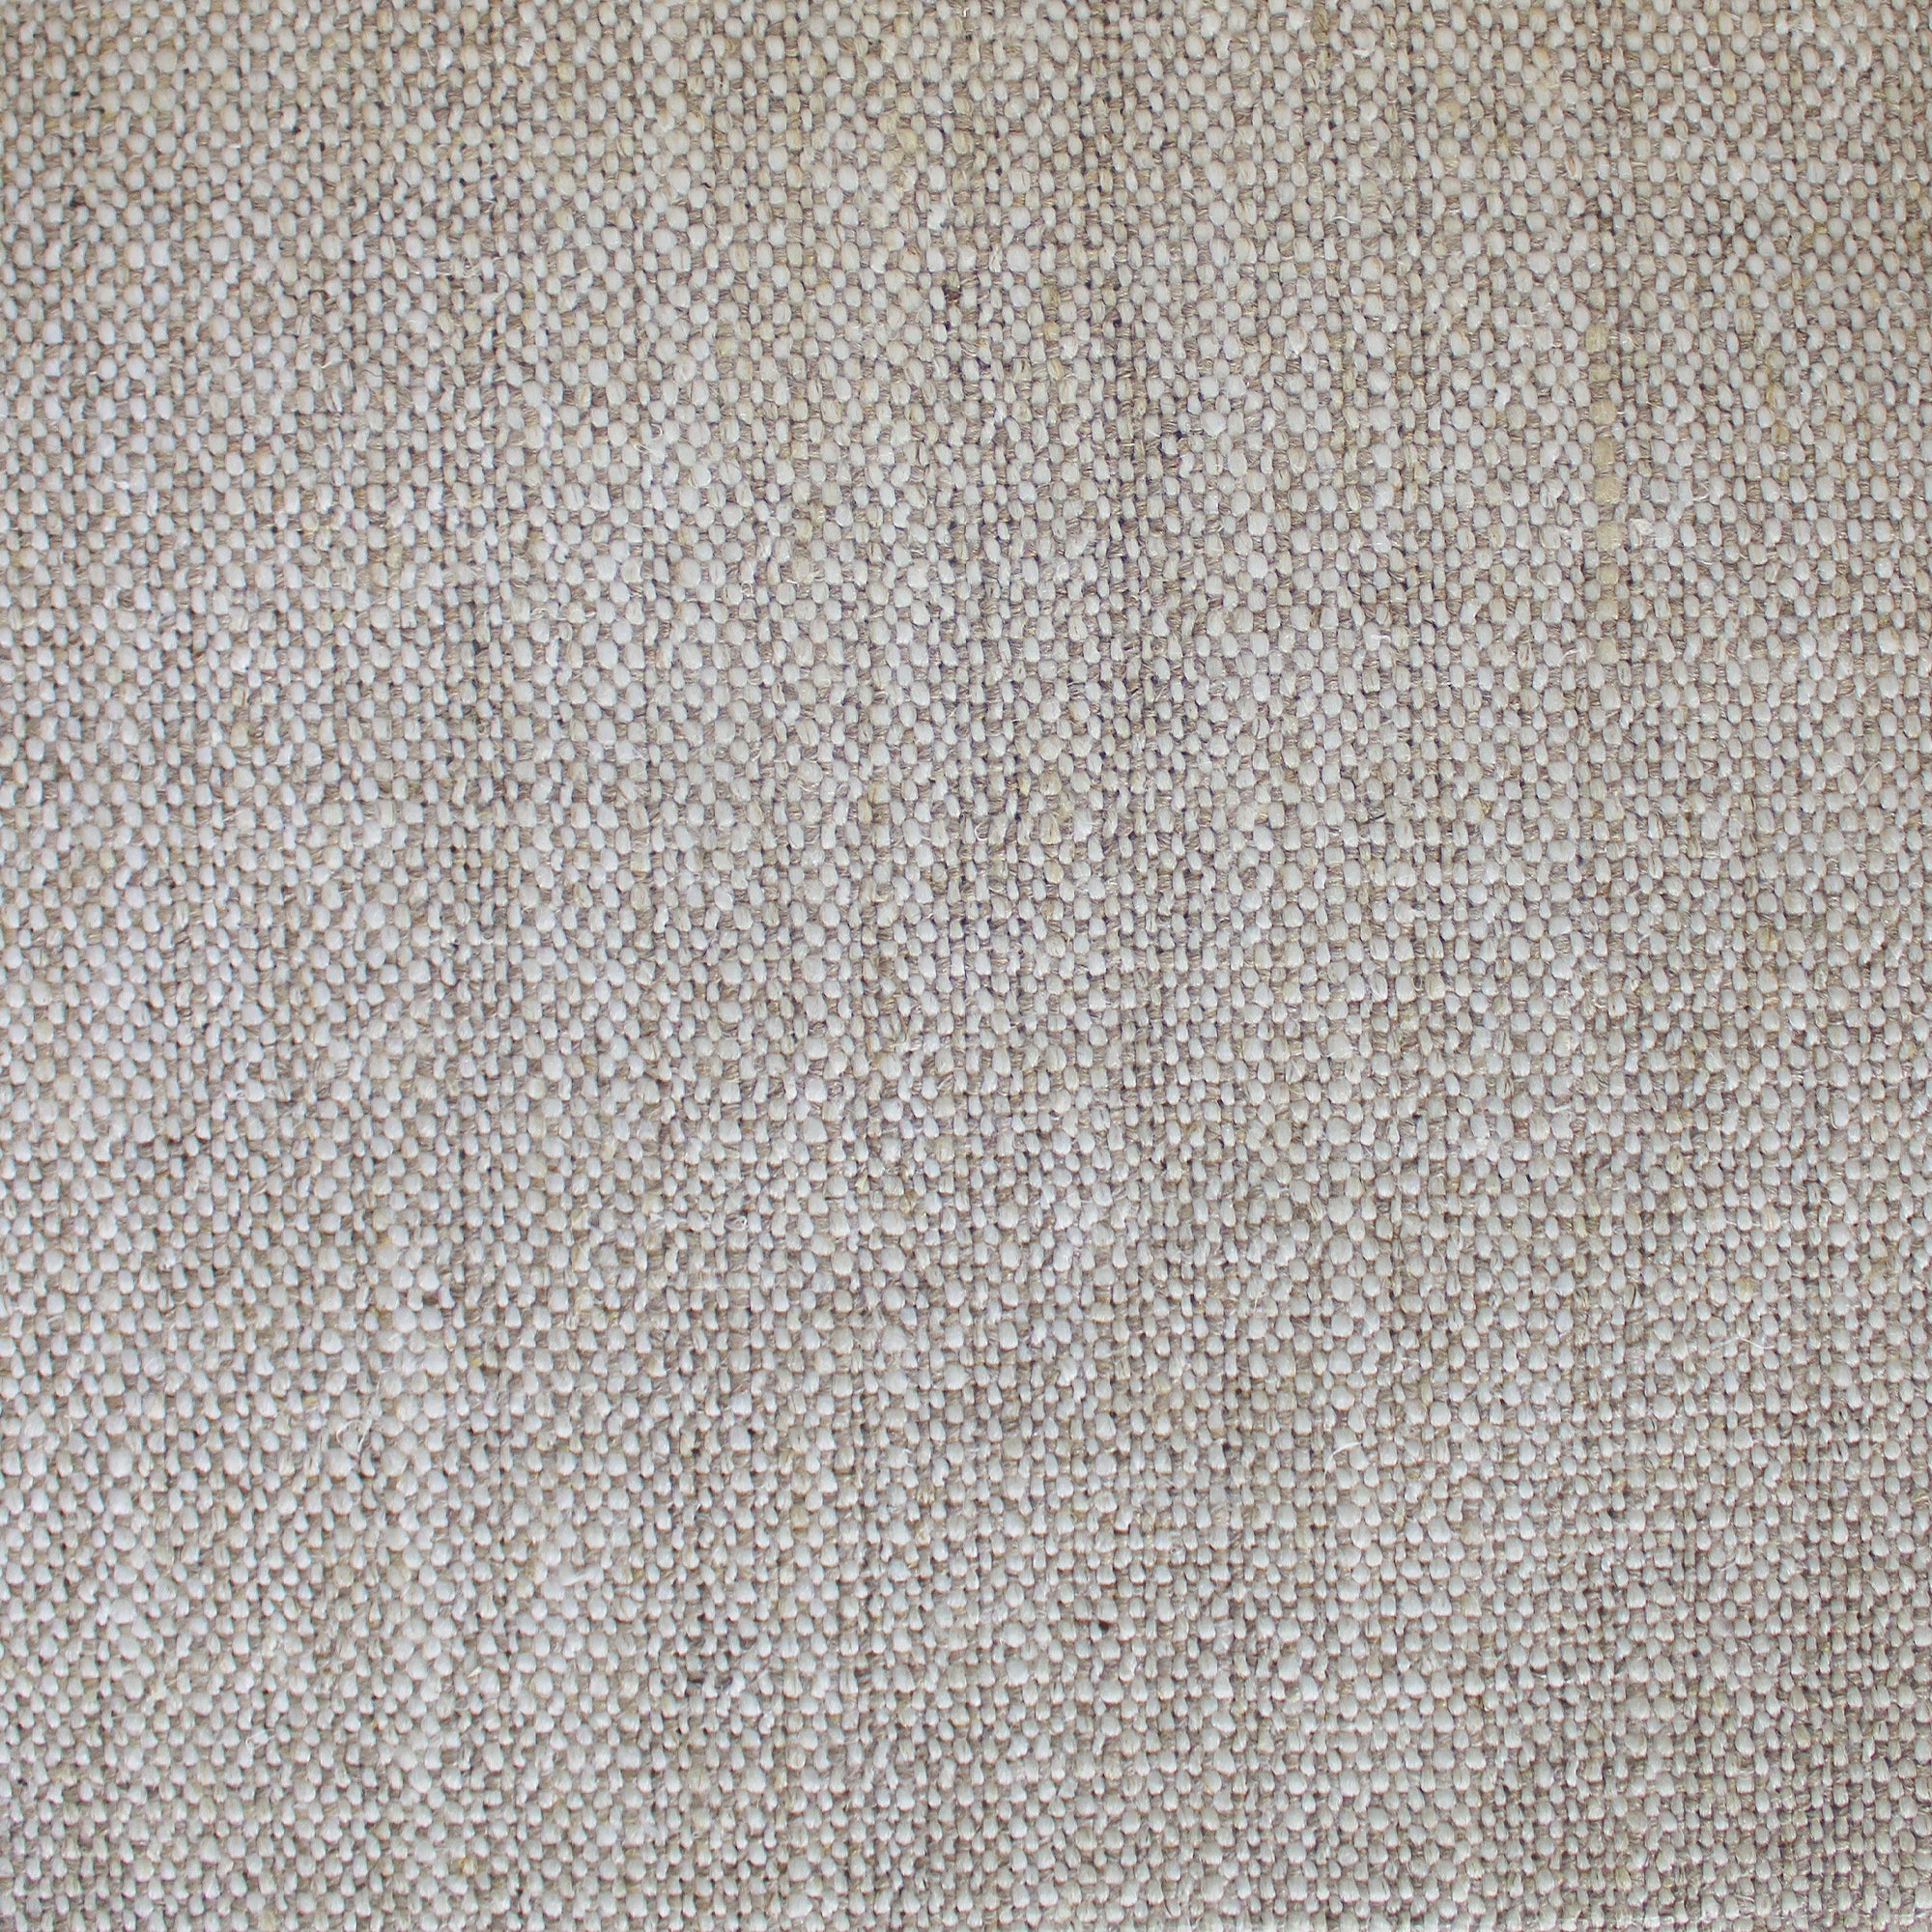 Croft Fabric | Textured Linen Blend